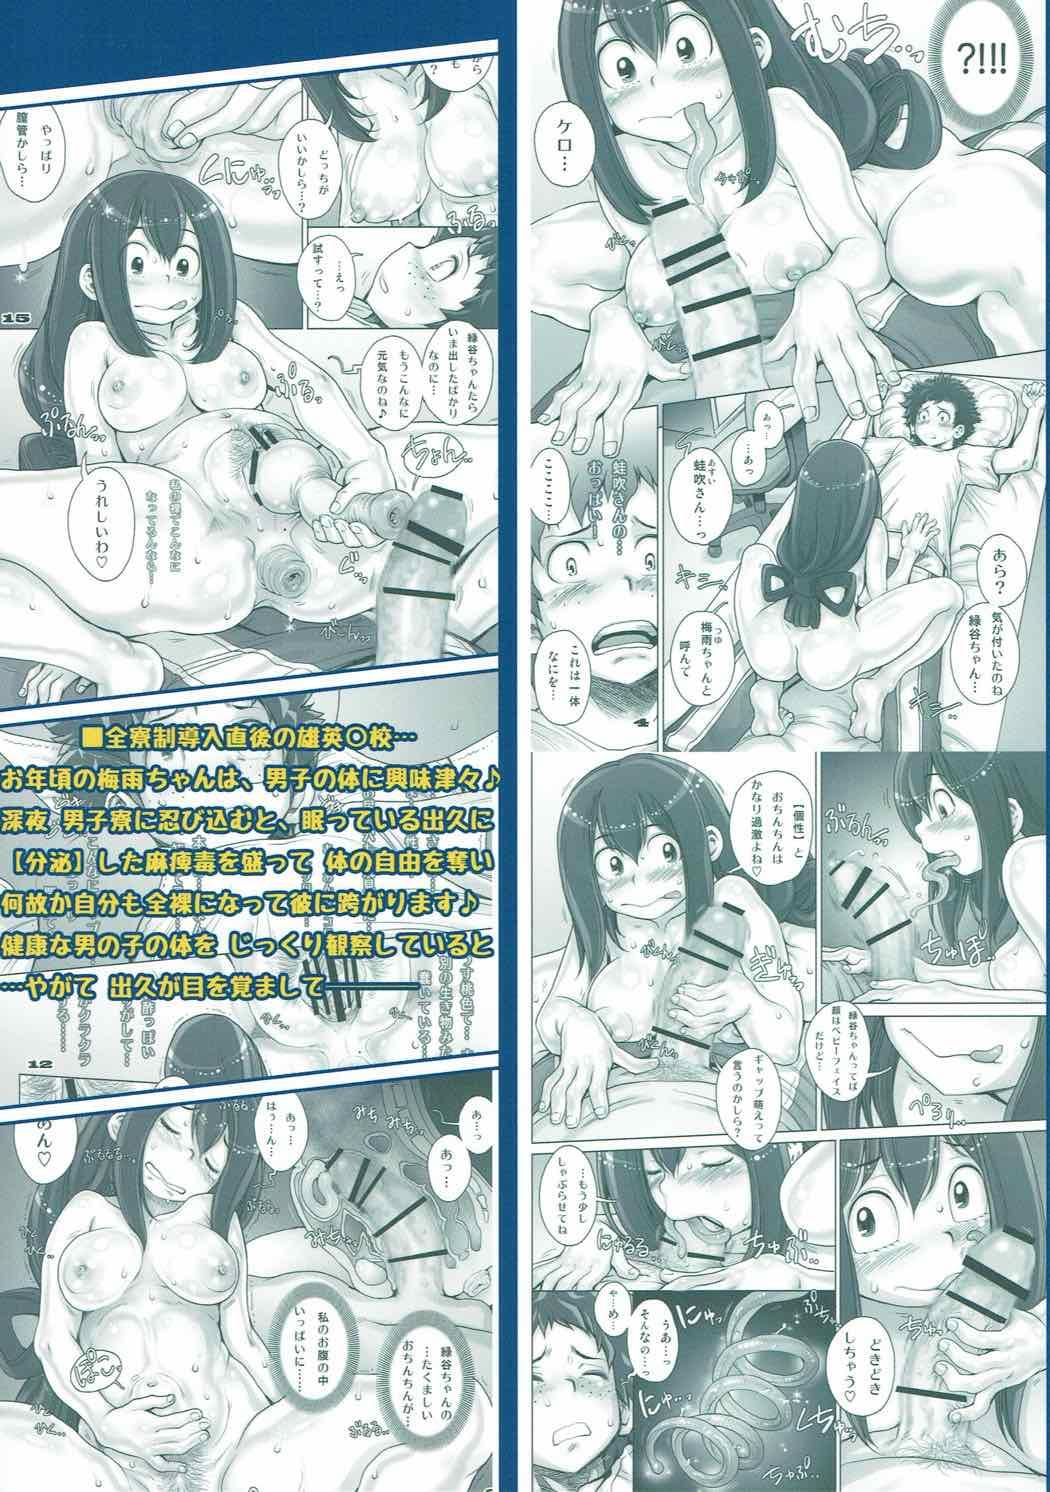 Teenage Kaeru desuga, nanika? - My hero academia Nurugel - Page 30